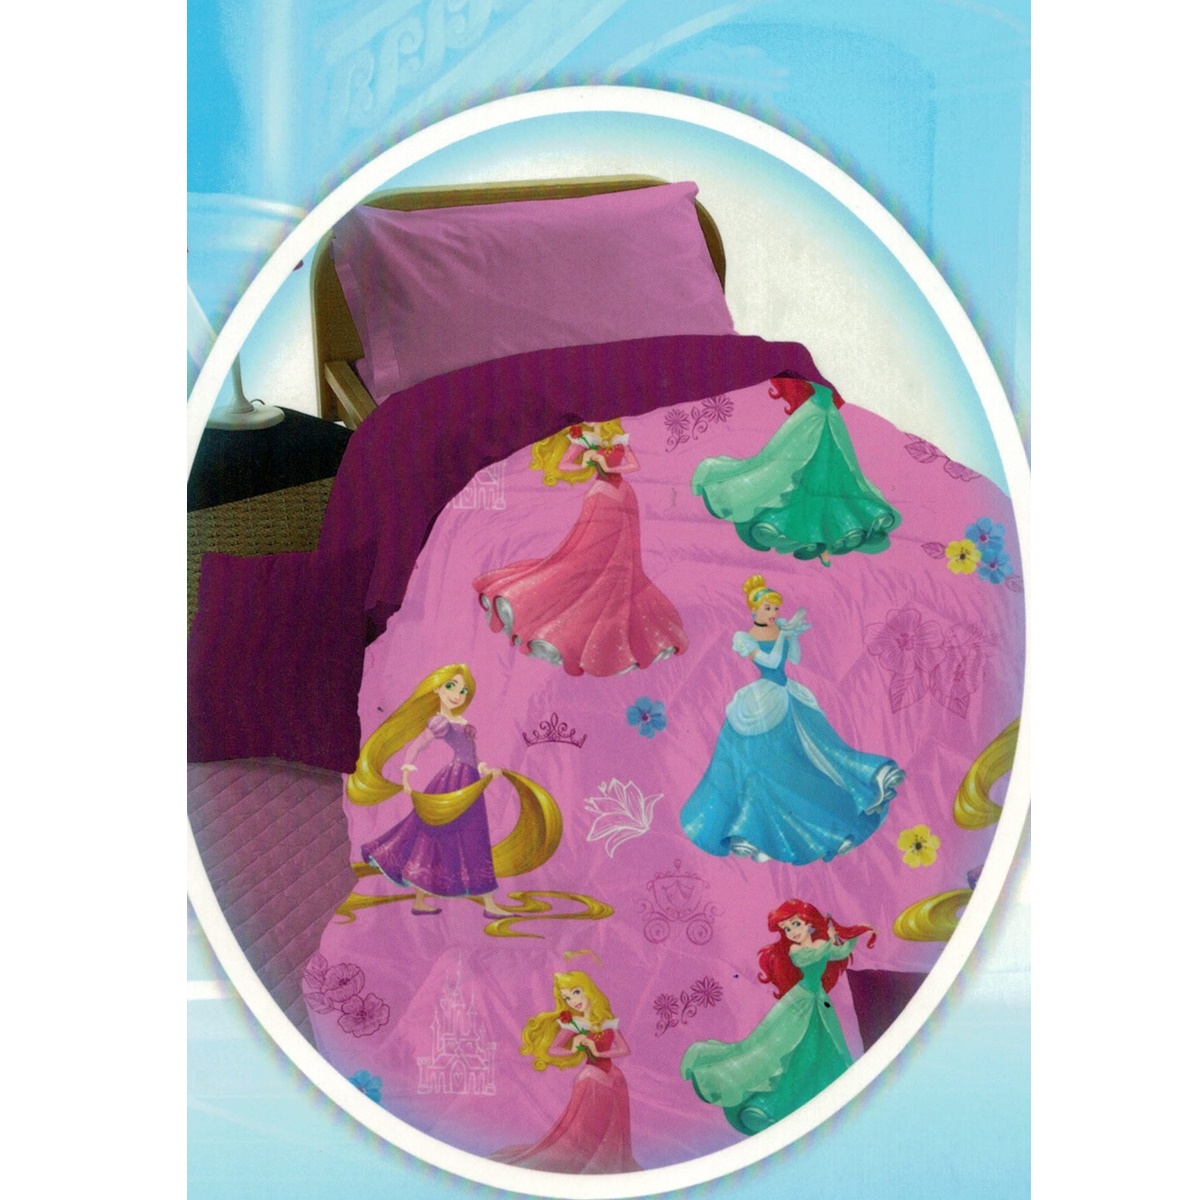 FUN HOUSE 713204 Colore: Viola Motivo: Frozen Mensola Porta Cappotto per Bambini 